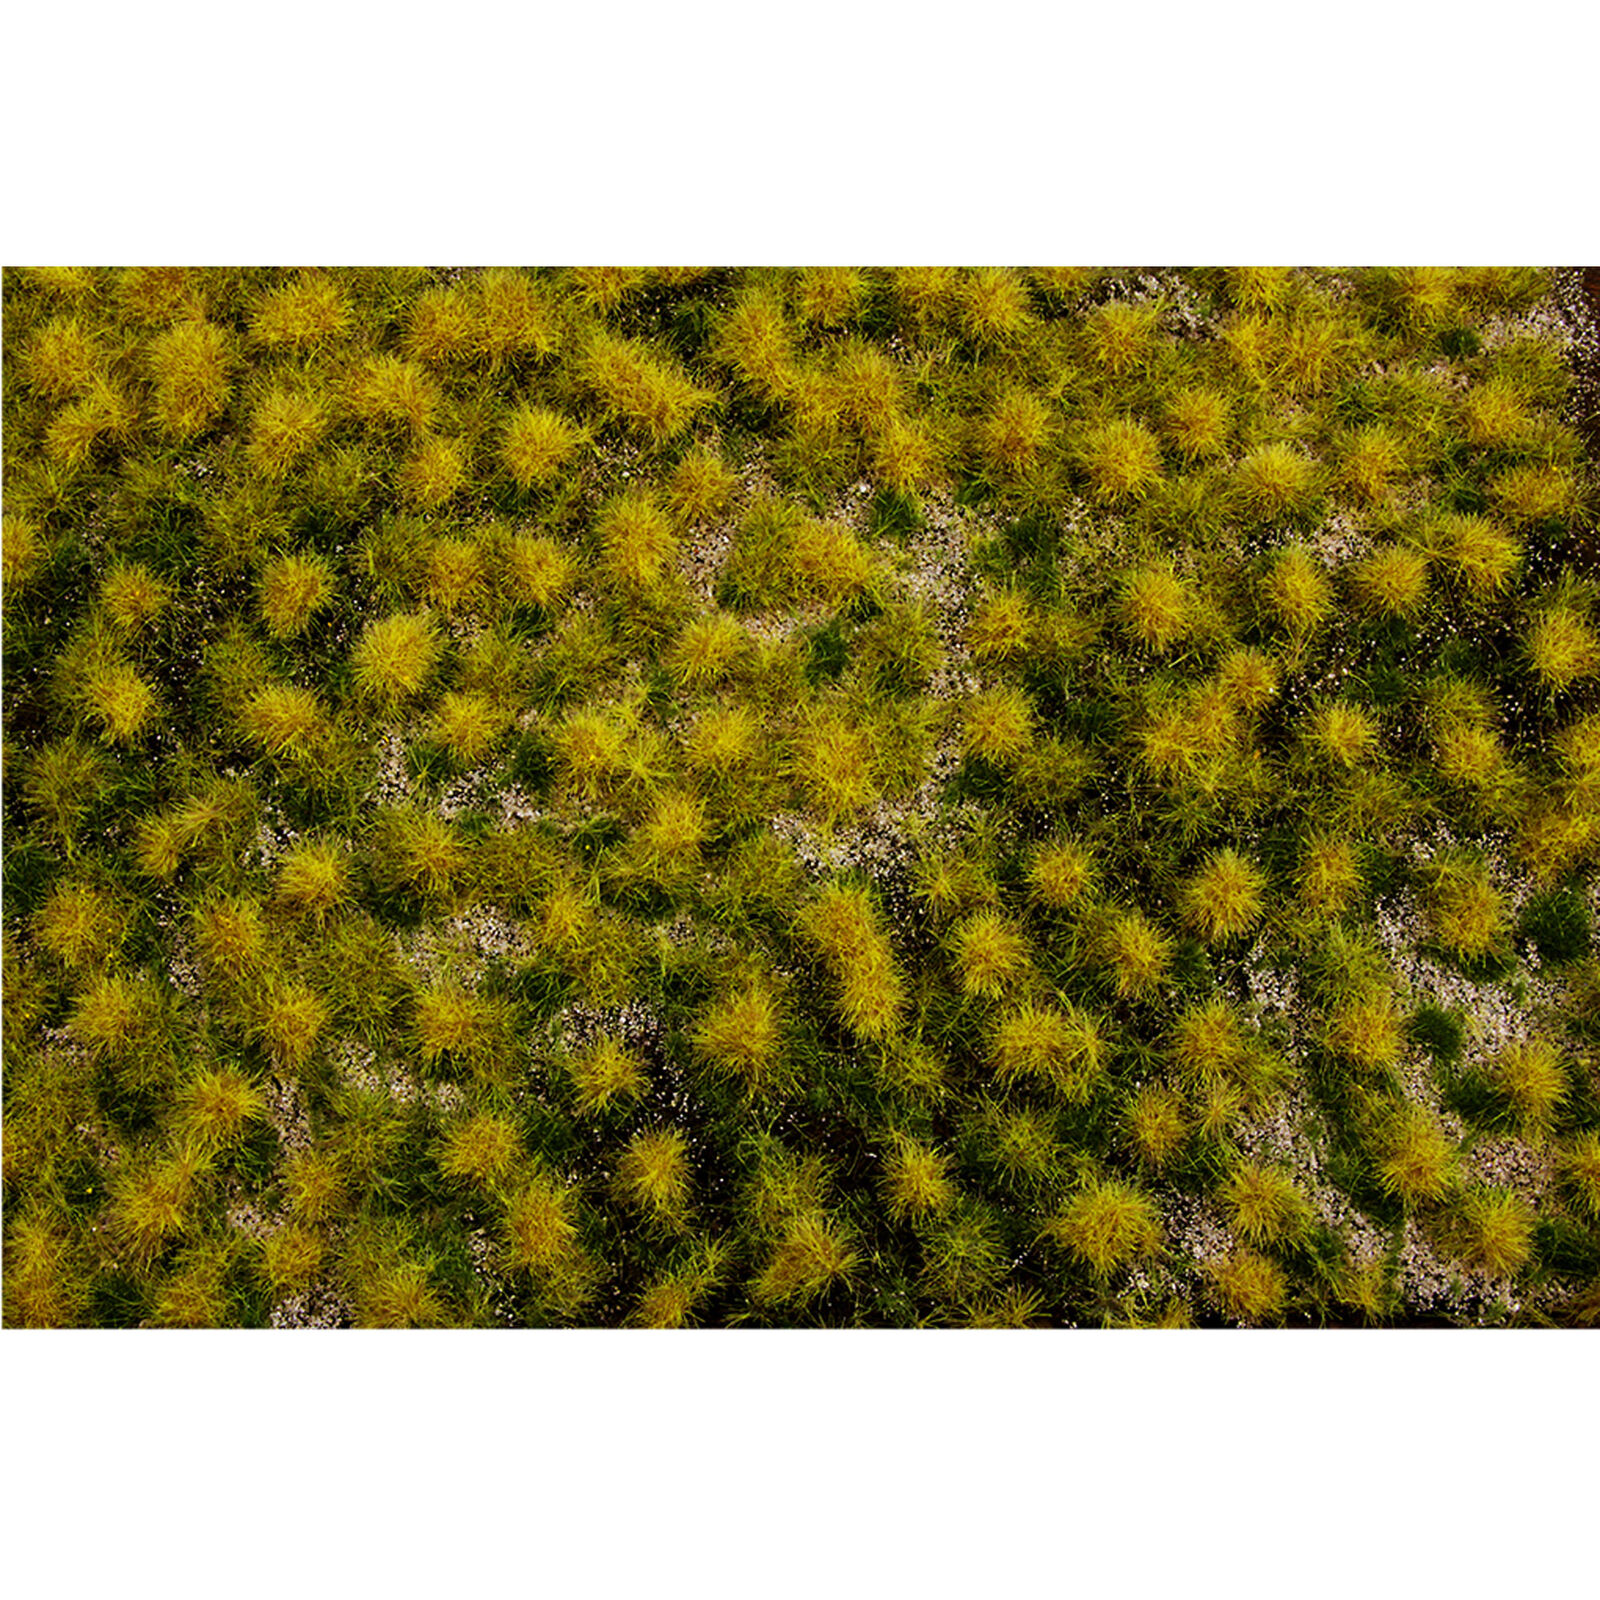 11.75" x 7.5" Tufted Grass Mat Dry Grass